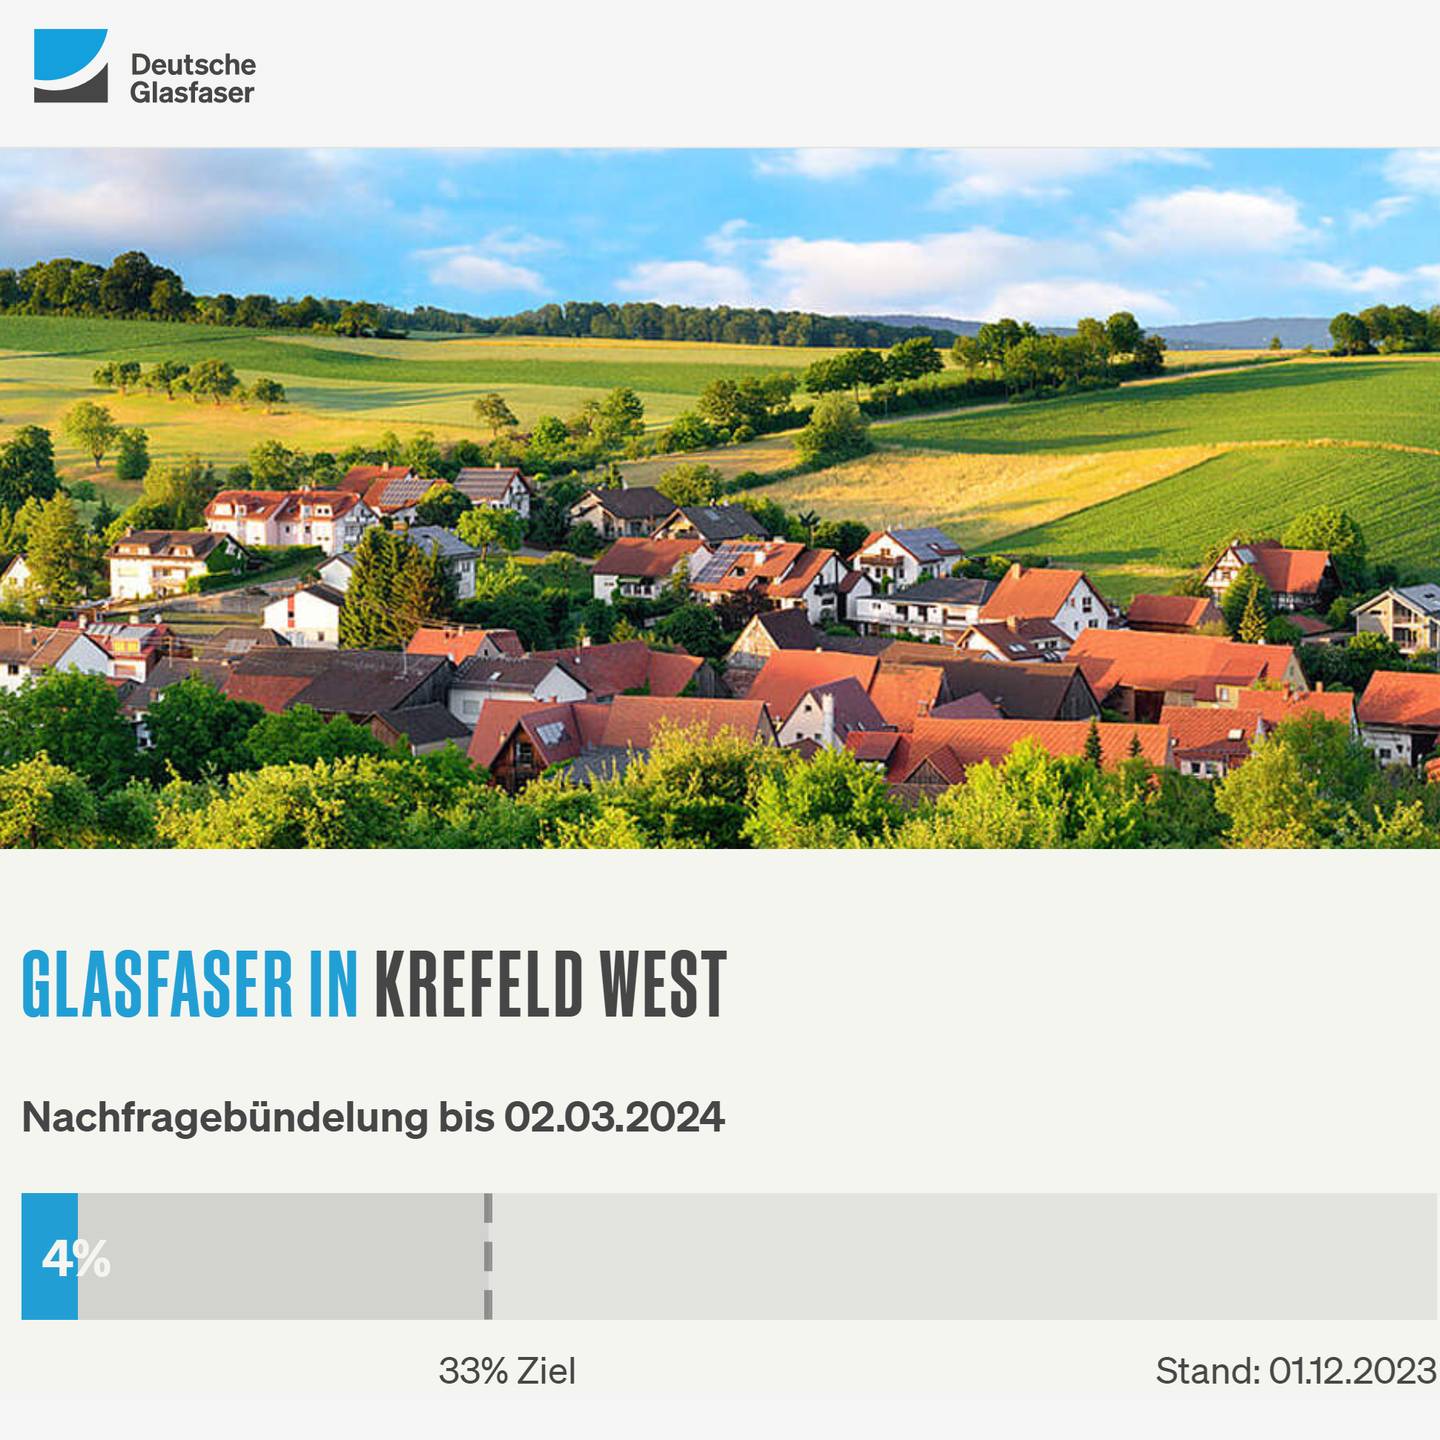 Screenshot von "Deutsche Glasfaser", oben DG Logo, ein Landschaftsbild, Schriftzüge "Glasfaser in Krefeld-West", Nachfragebündelung bis 2.3.2024, Anzeige der aktuellen Prozentzahl von 33% Ziel 